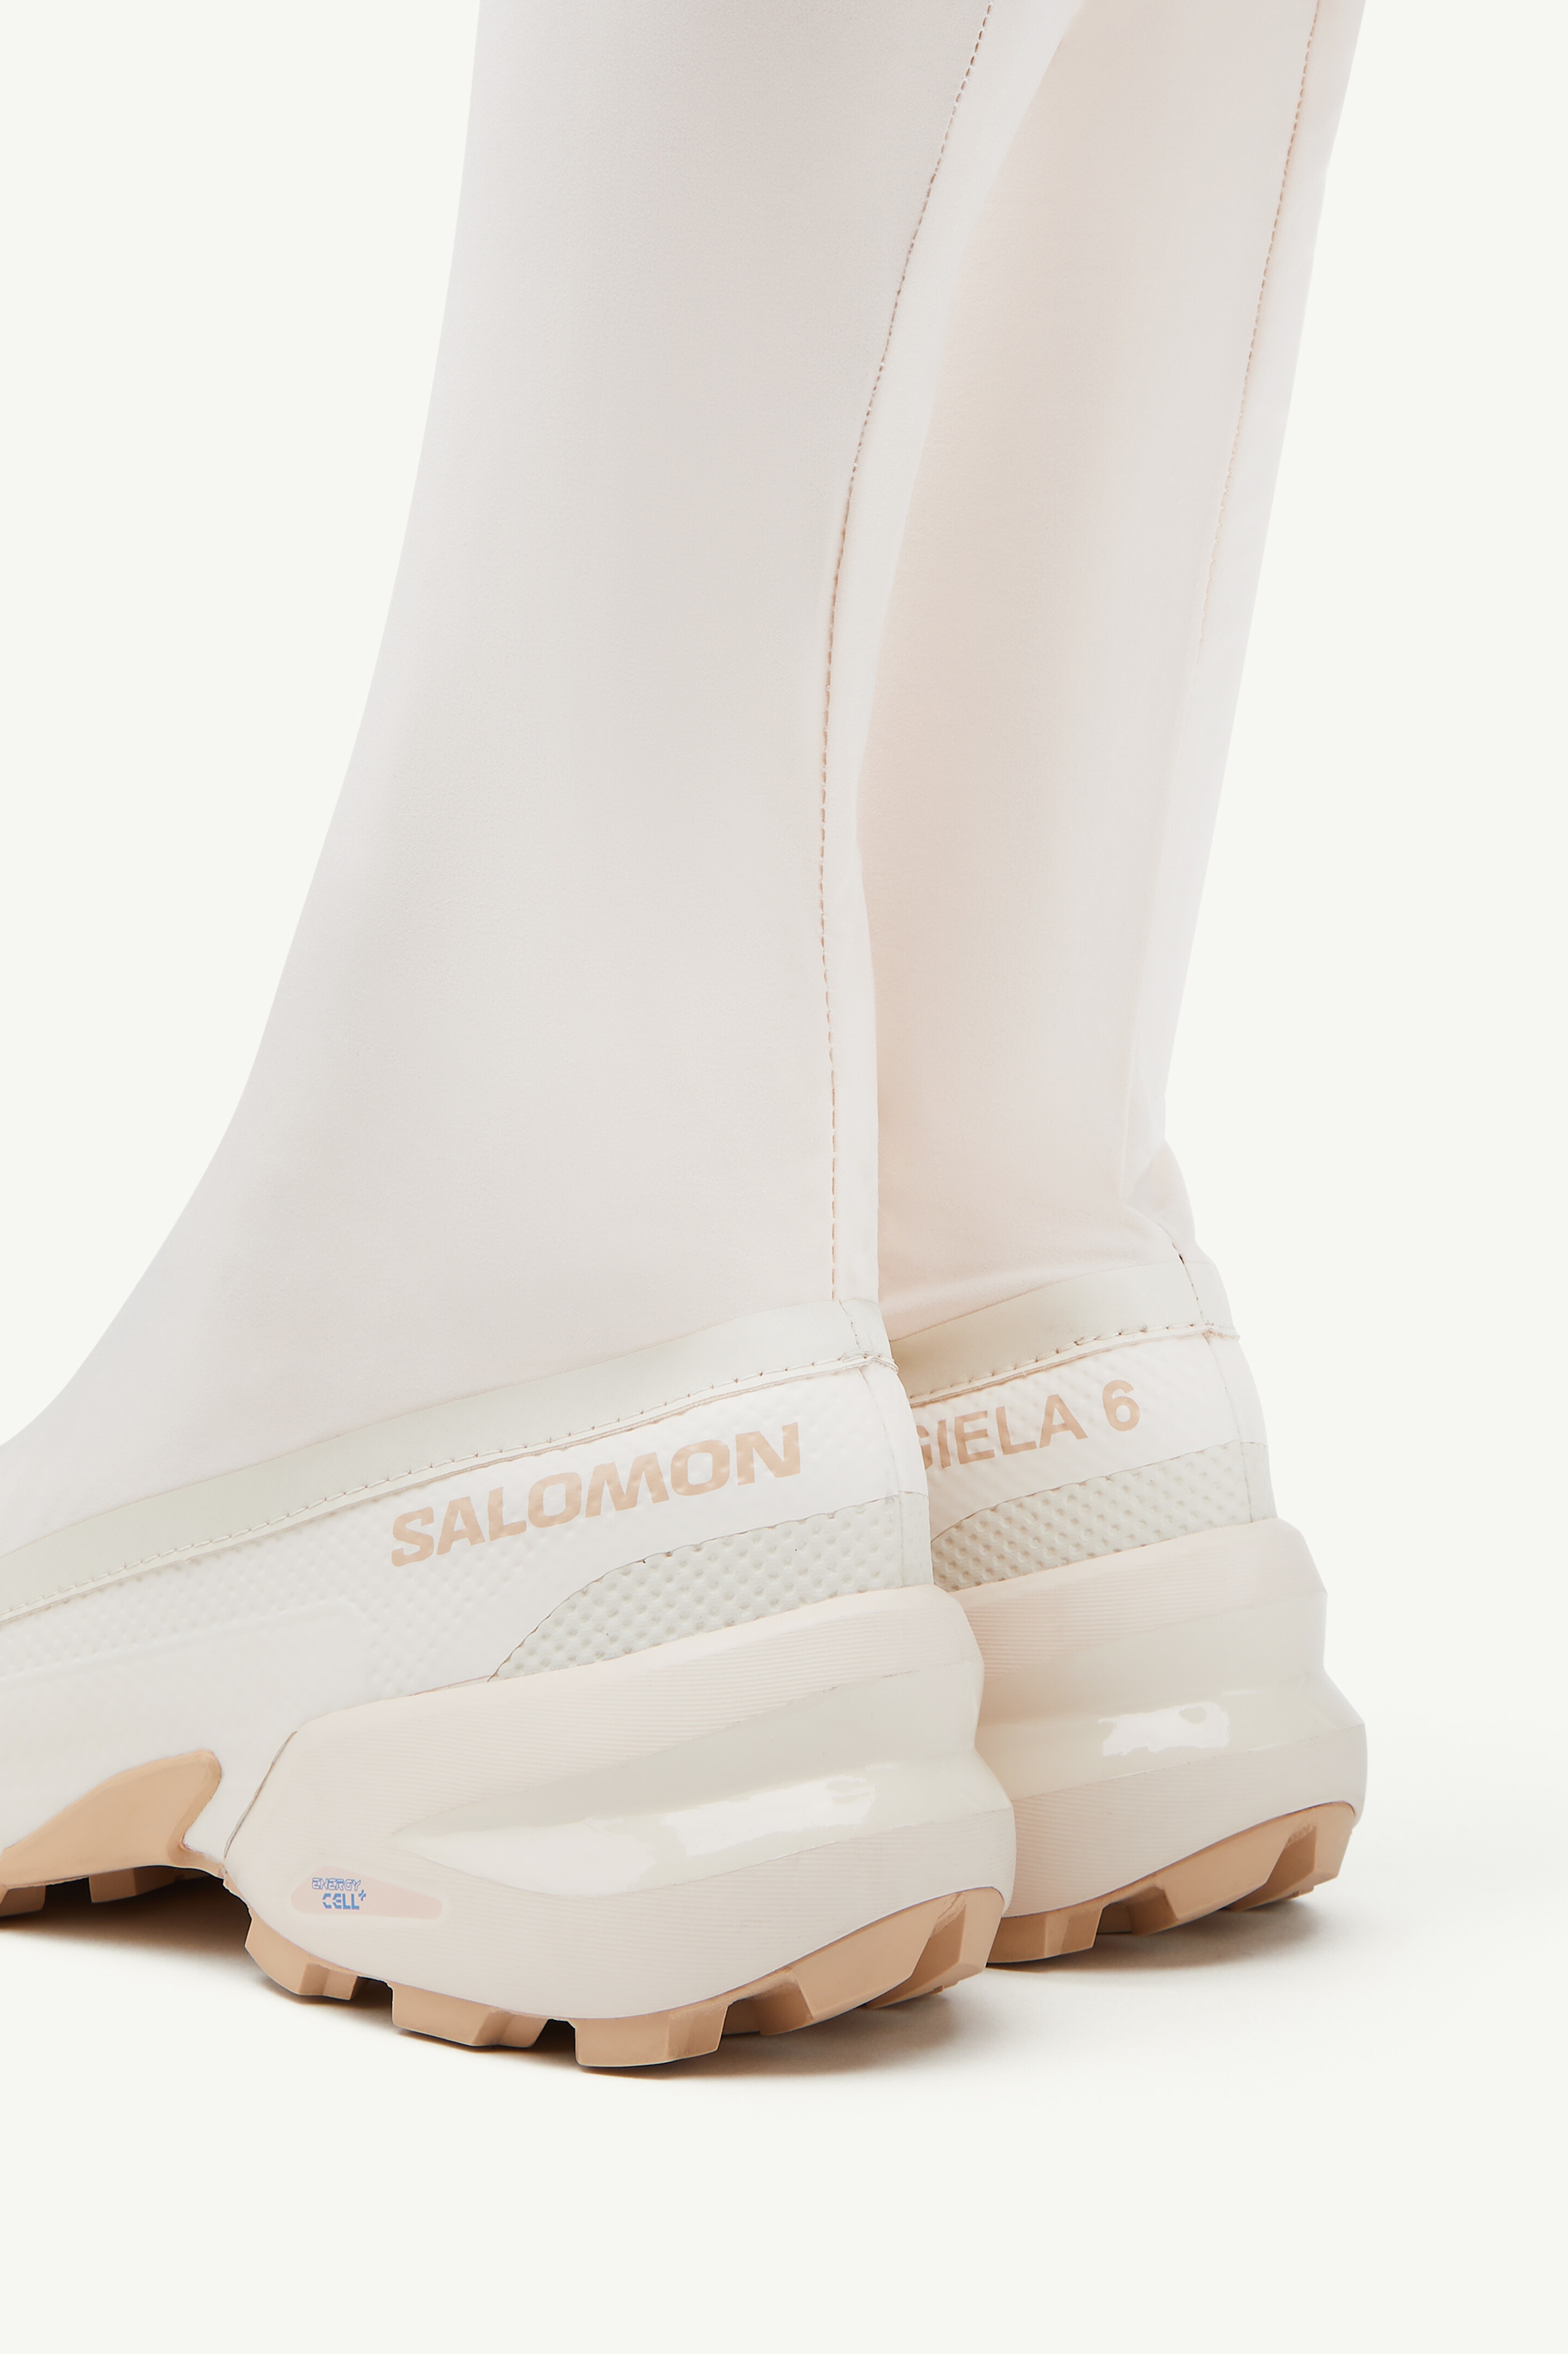 Salomon thigh high boot - 5